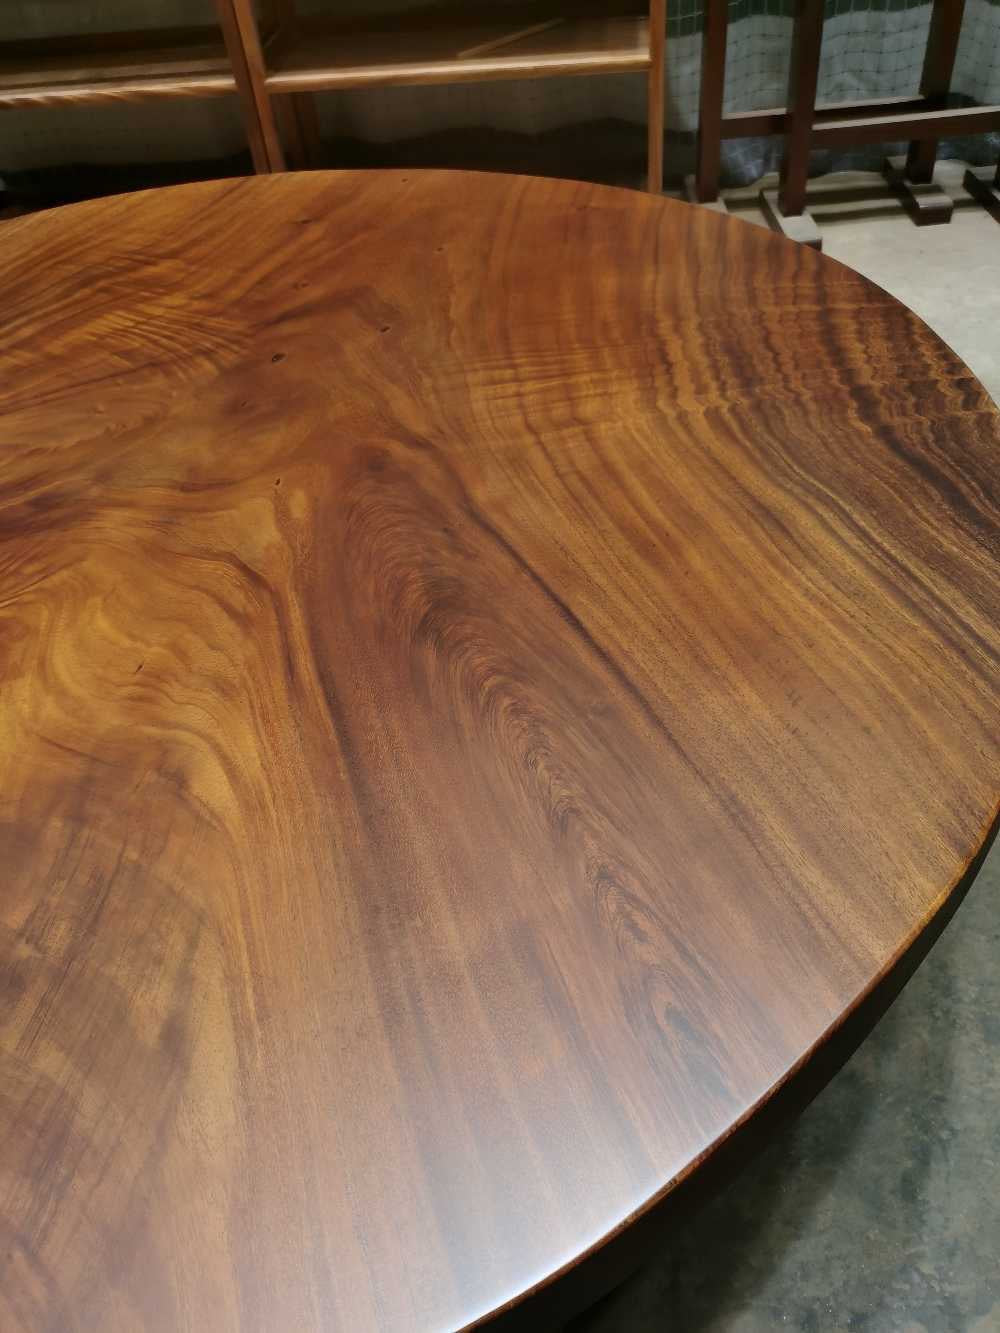 runder Tisch aus antikem Holz, runder Tisch aus rohem Holz, runde Tischplatten aus massivem Holz